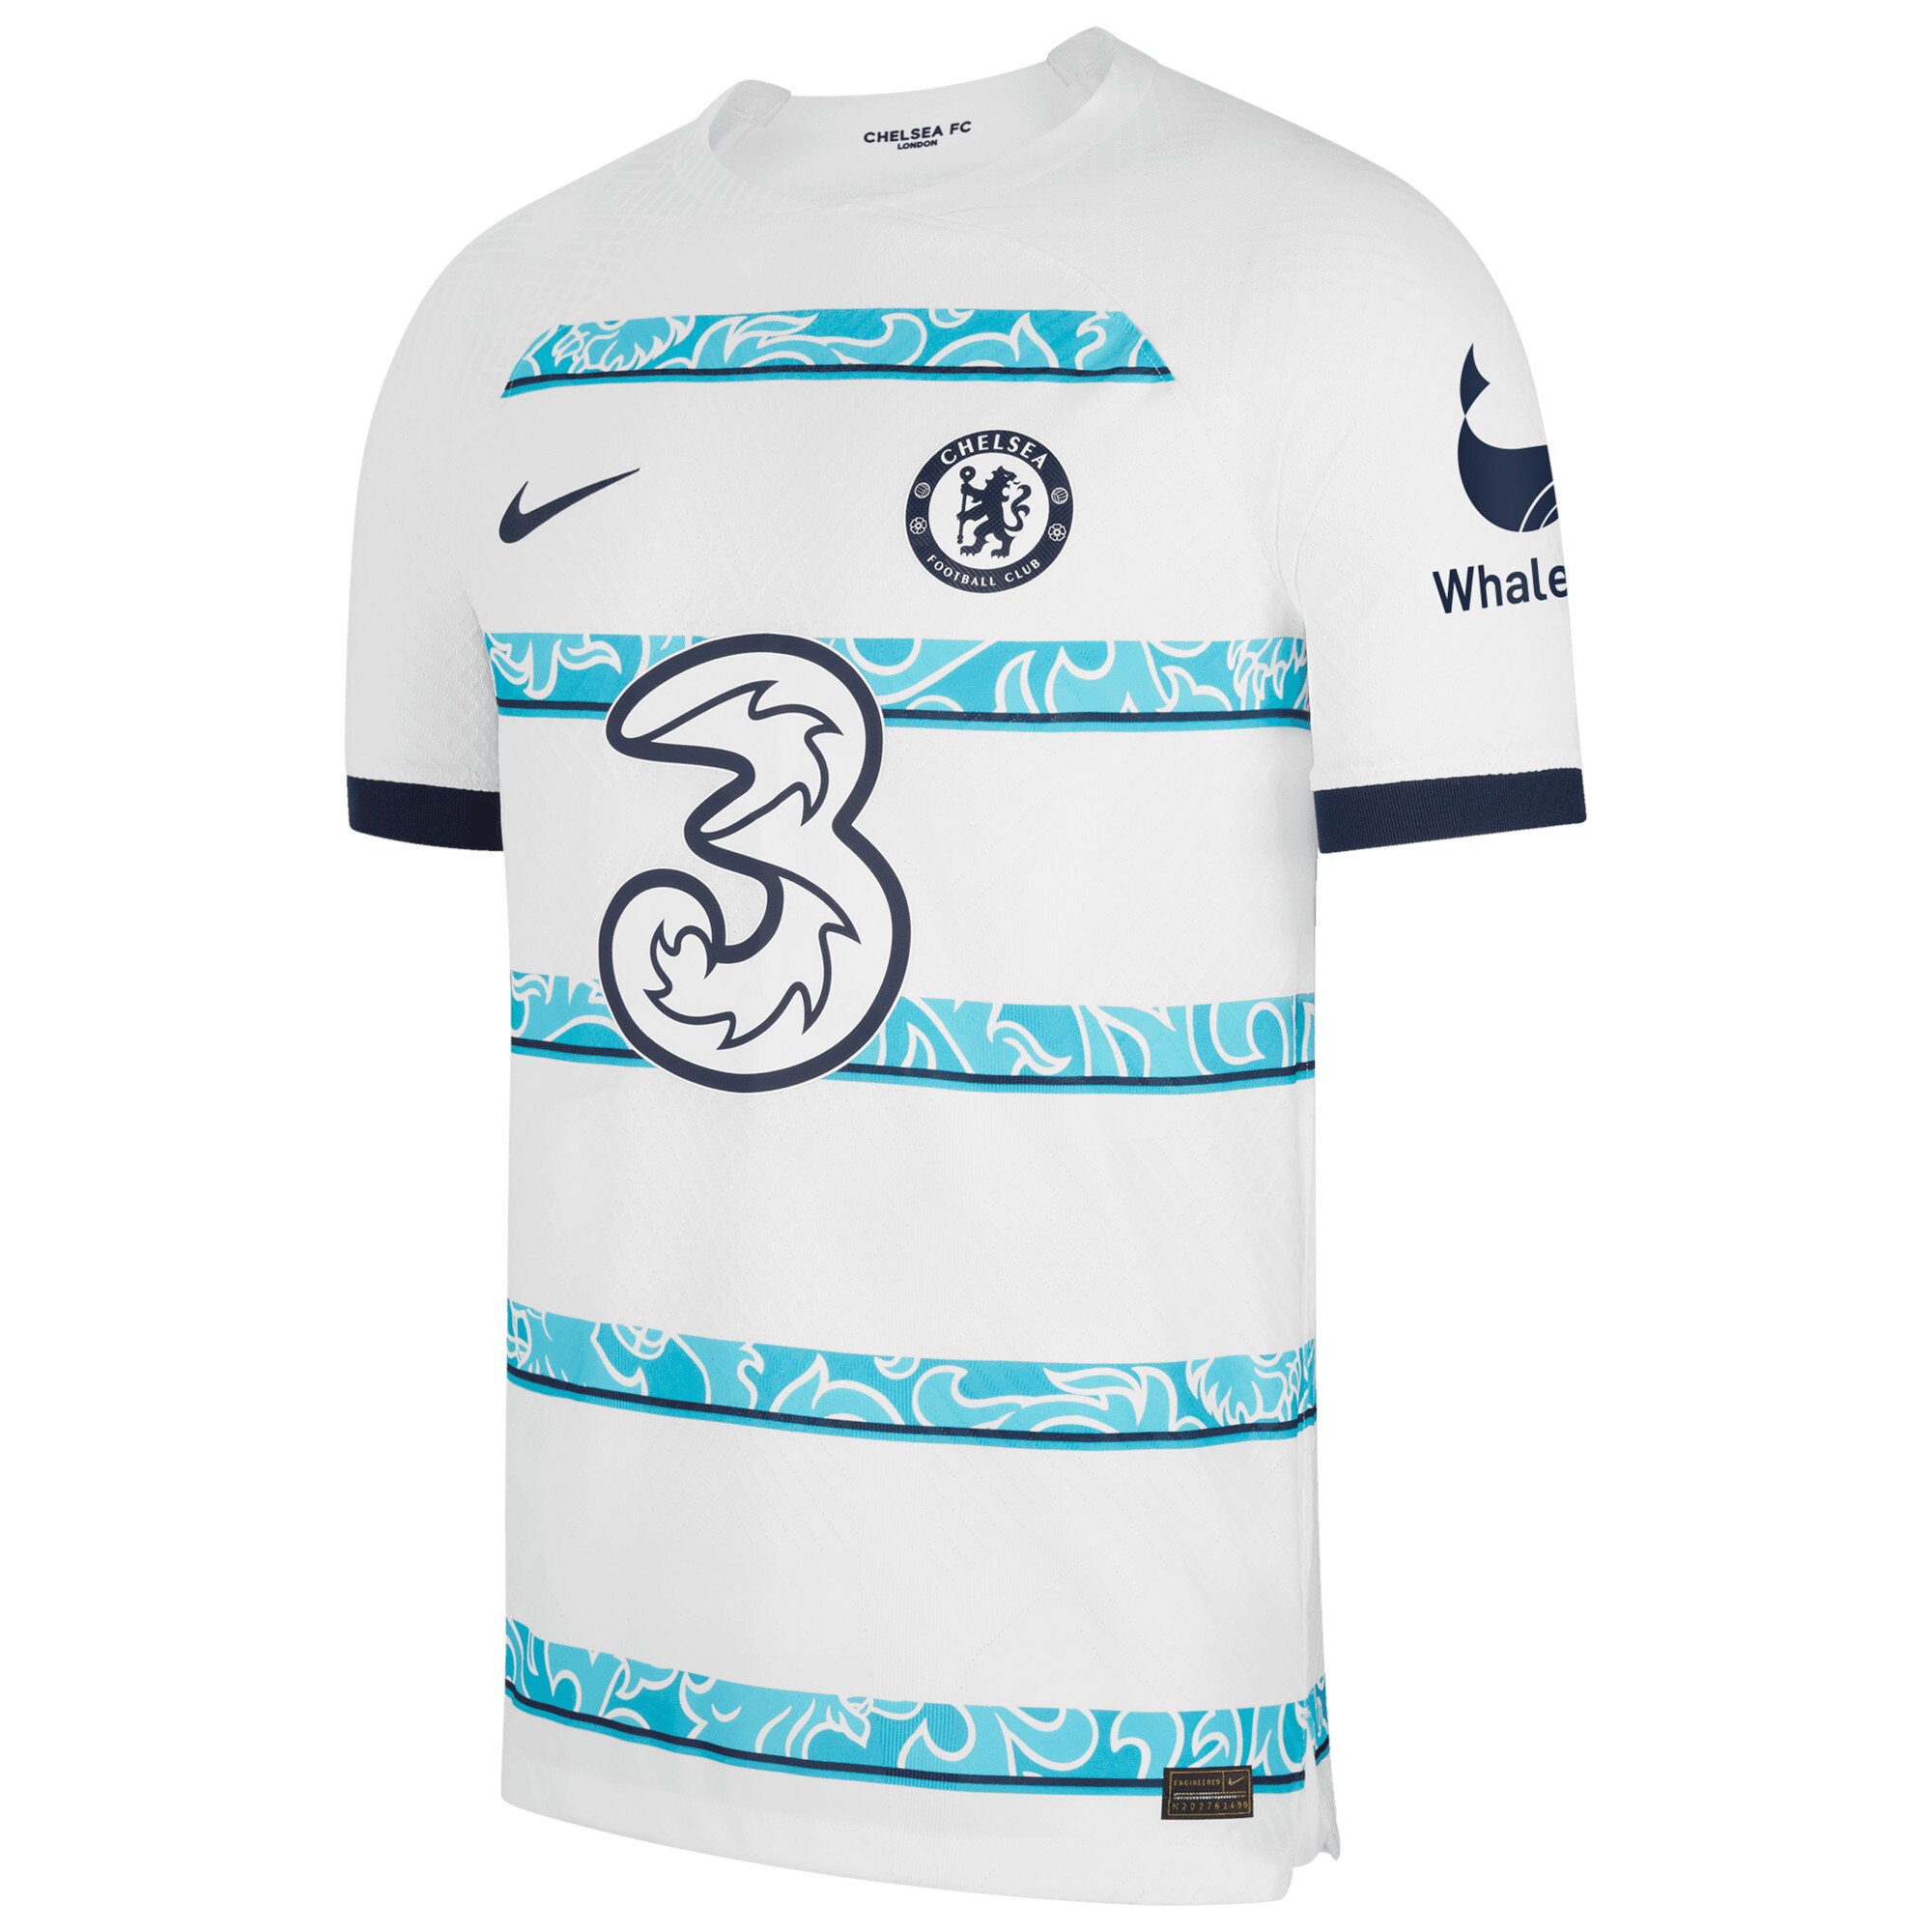 Chelsea Away Vapor Match Shirt 2022-23 with Kanté 7 printing